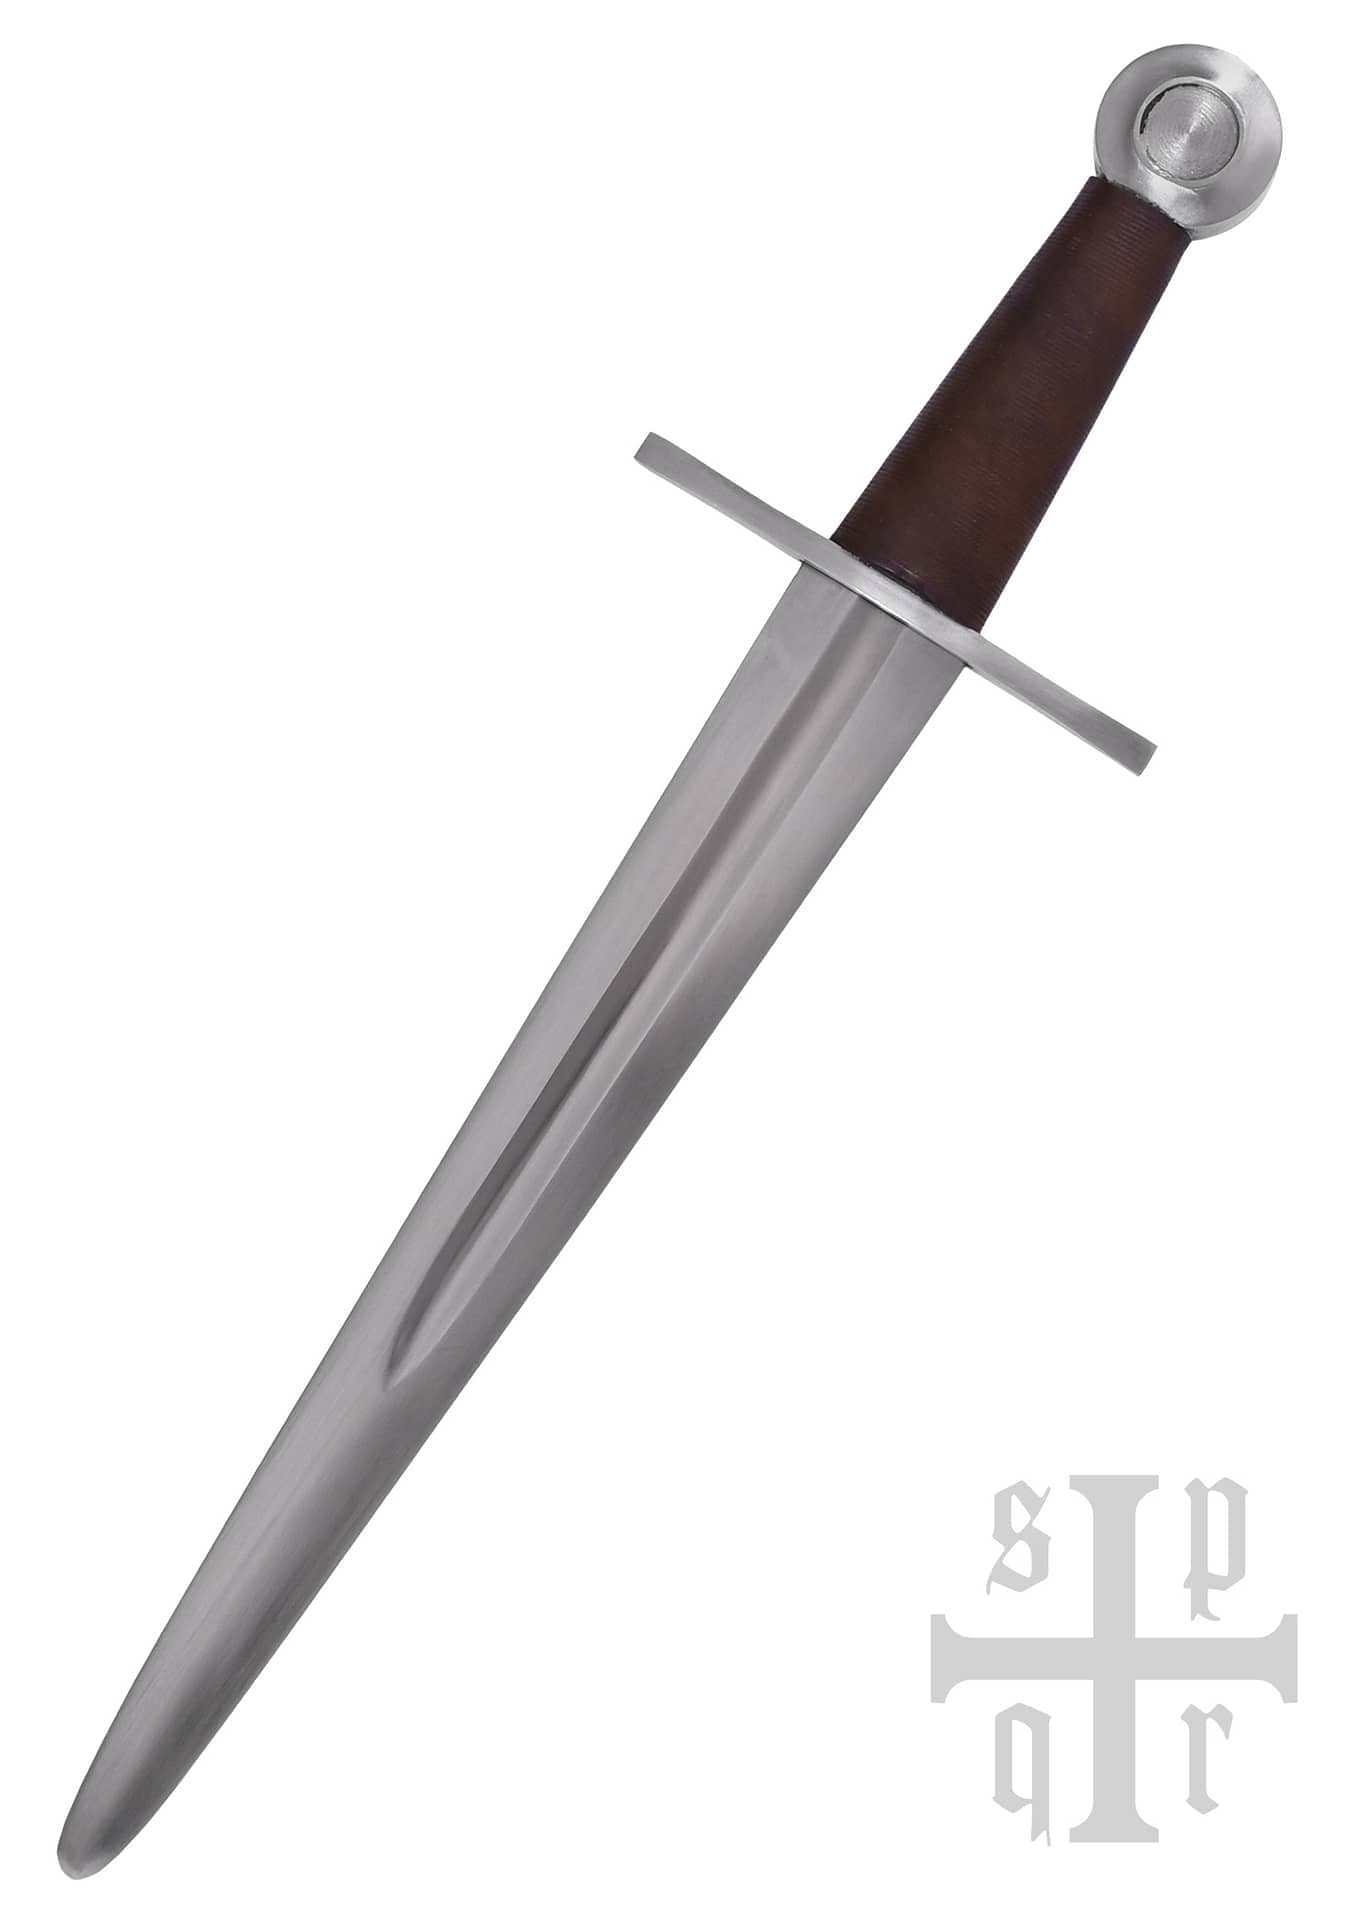 Daga de caballero medieval, roma 0264001481 - Espadas y Más